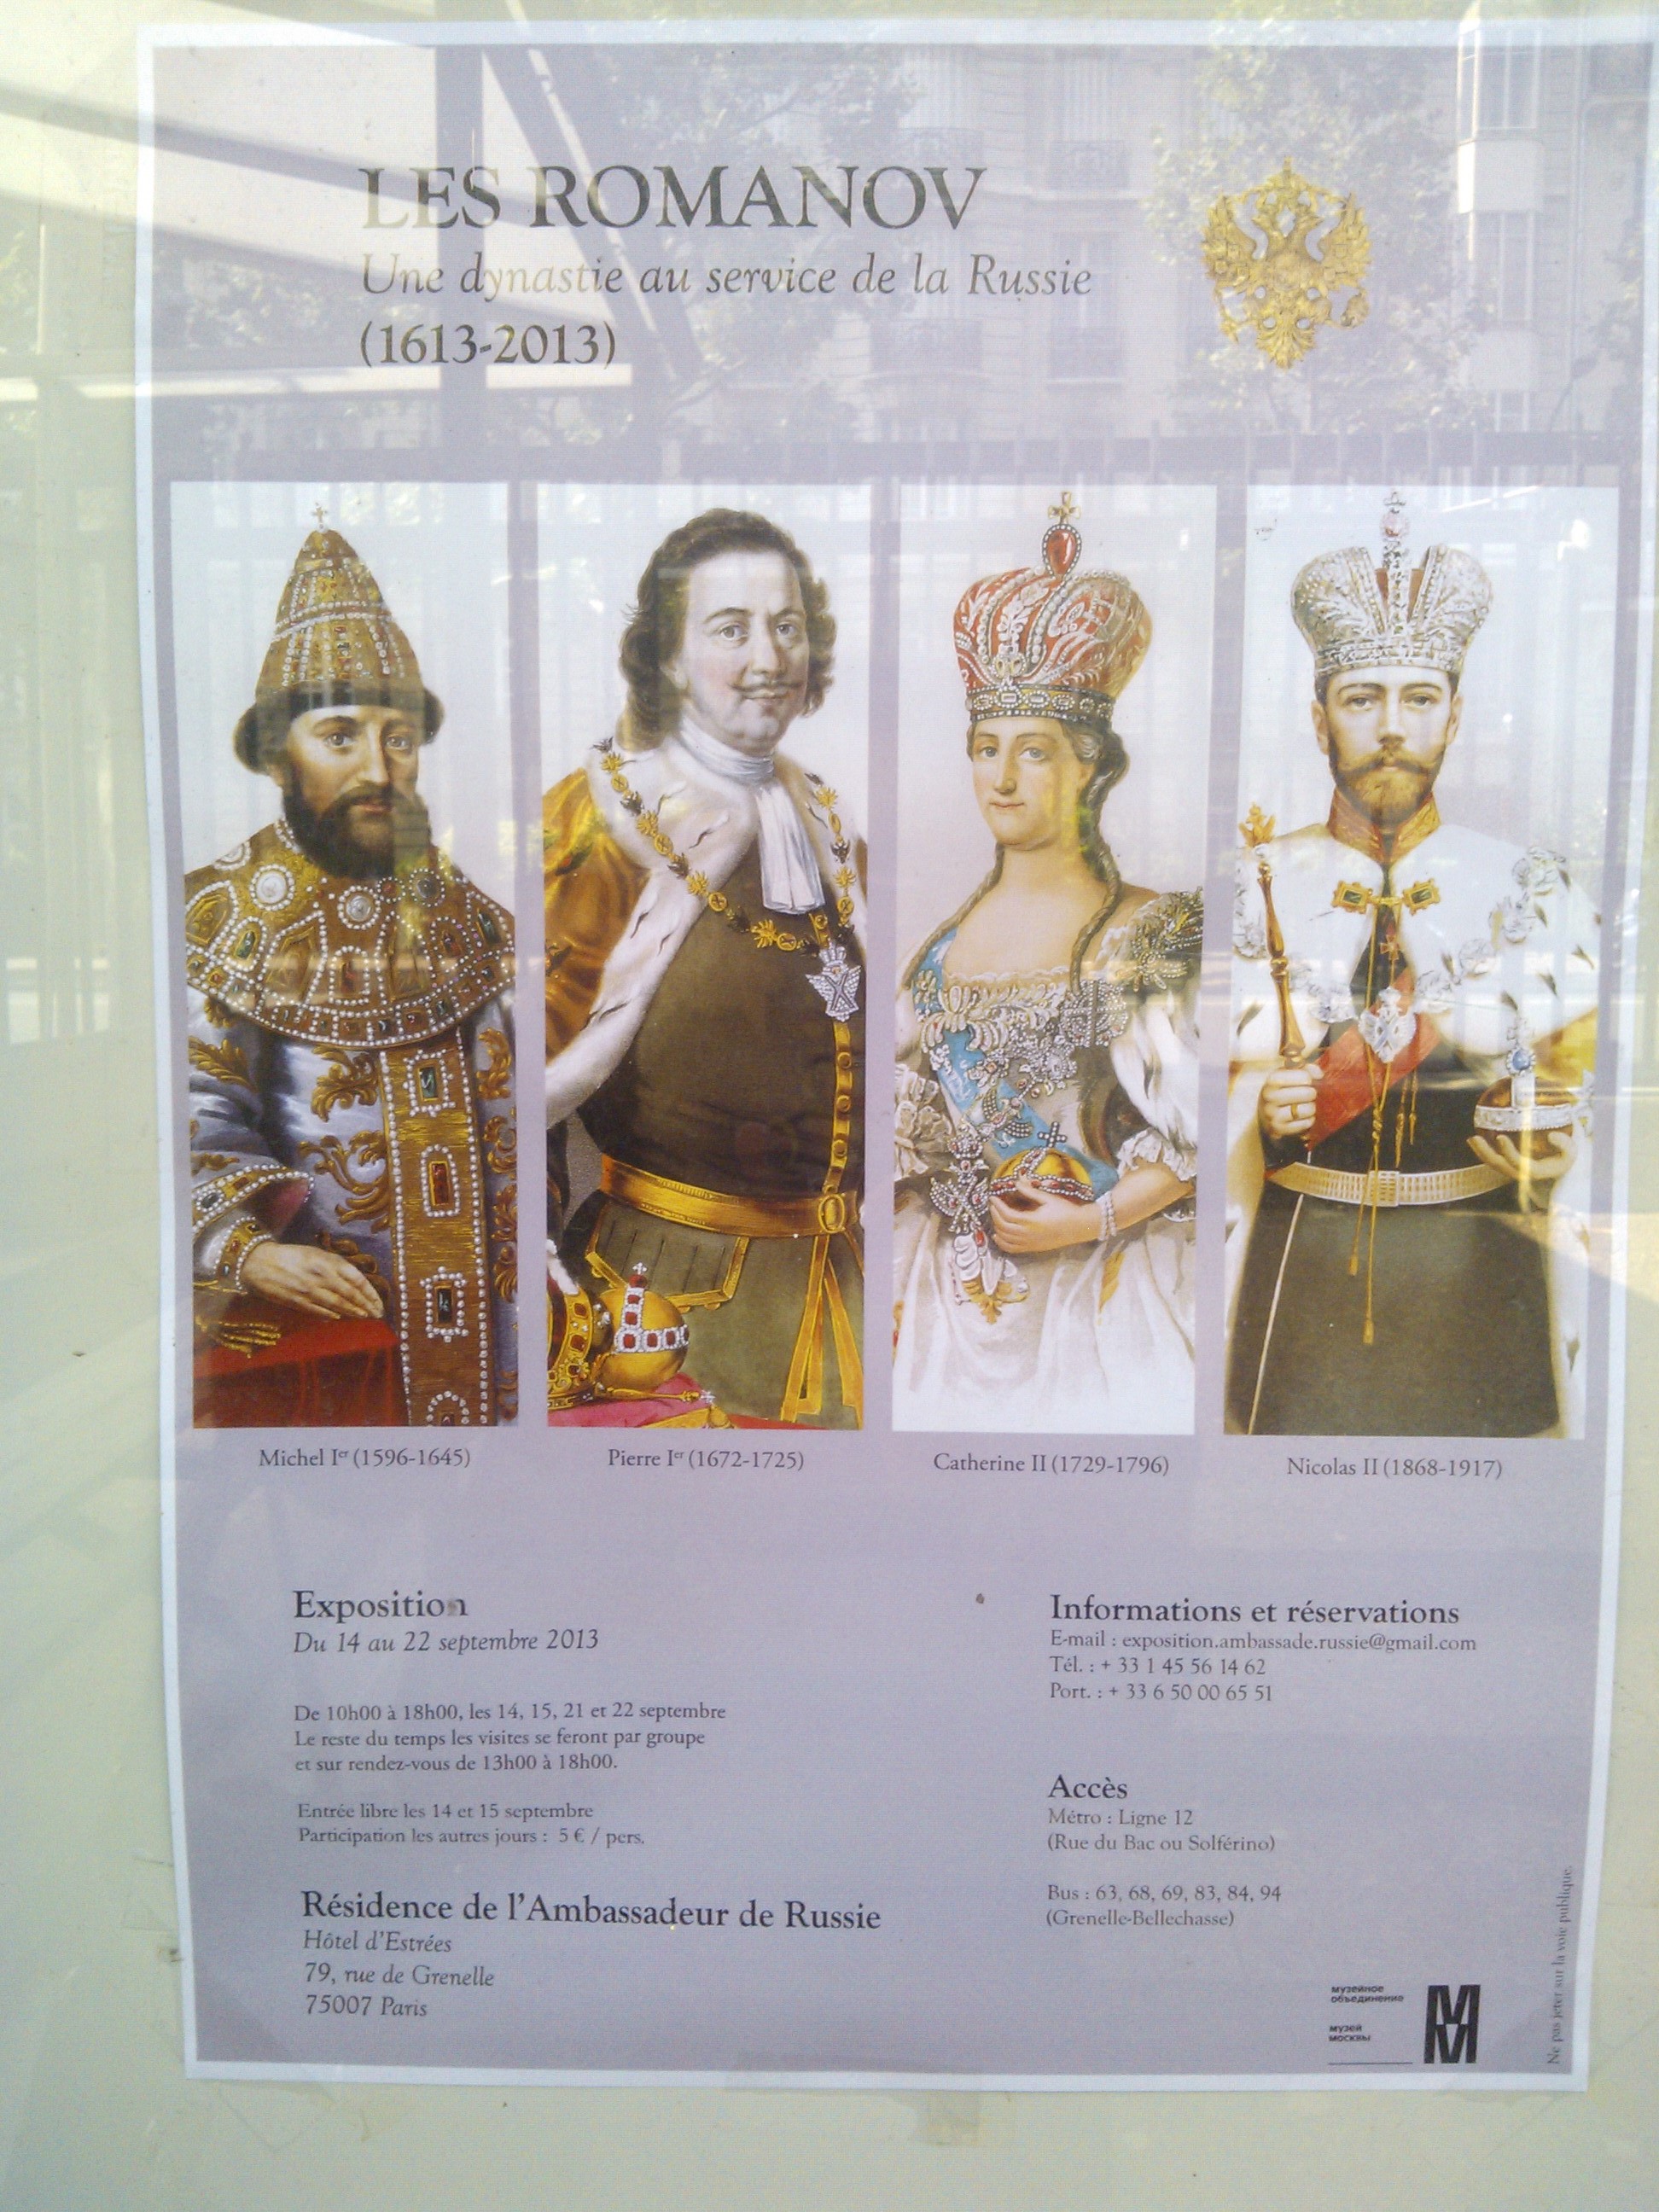 Journées du patrimoine du 16 au 22 septembre 2013 : Les Romanov, une dynastie au service de la Russie (1613-2013)